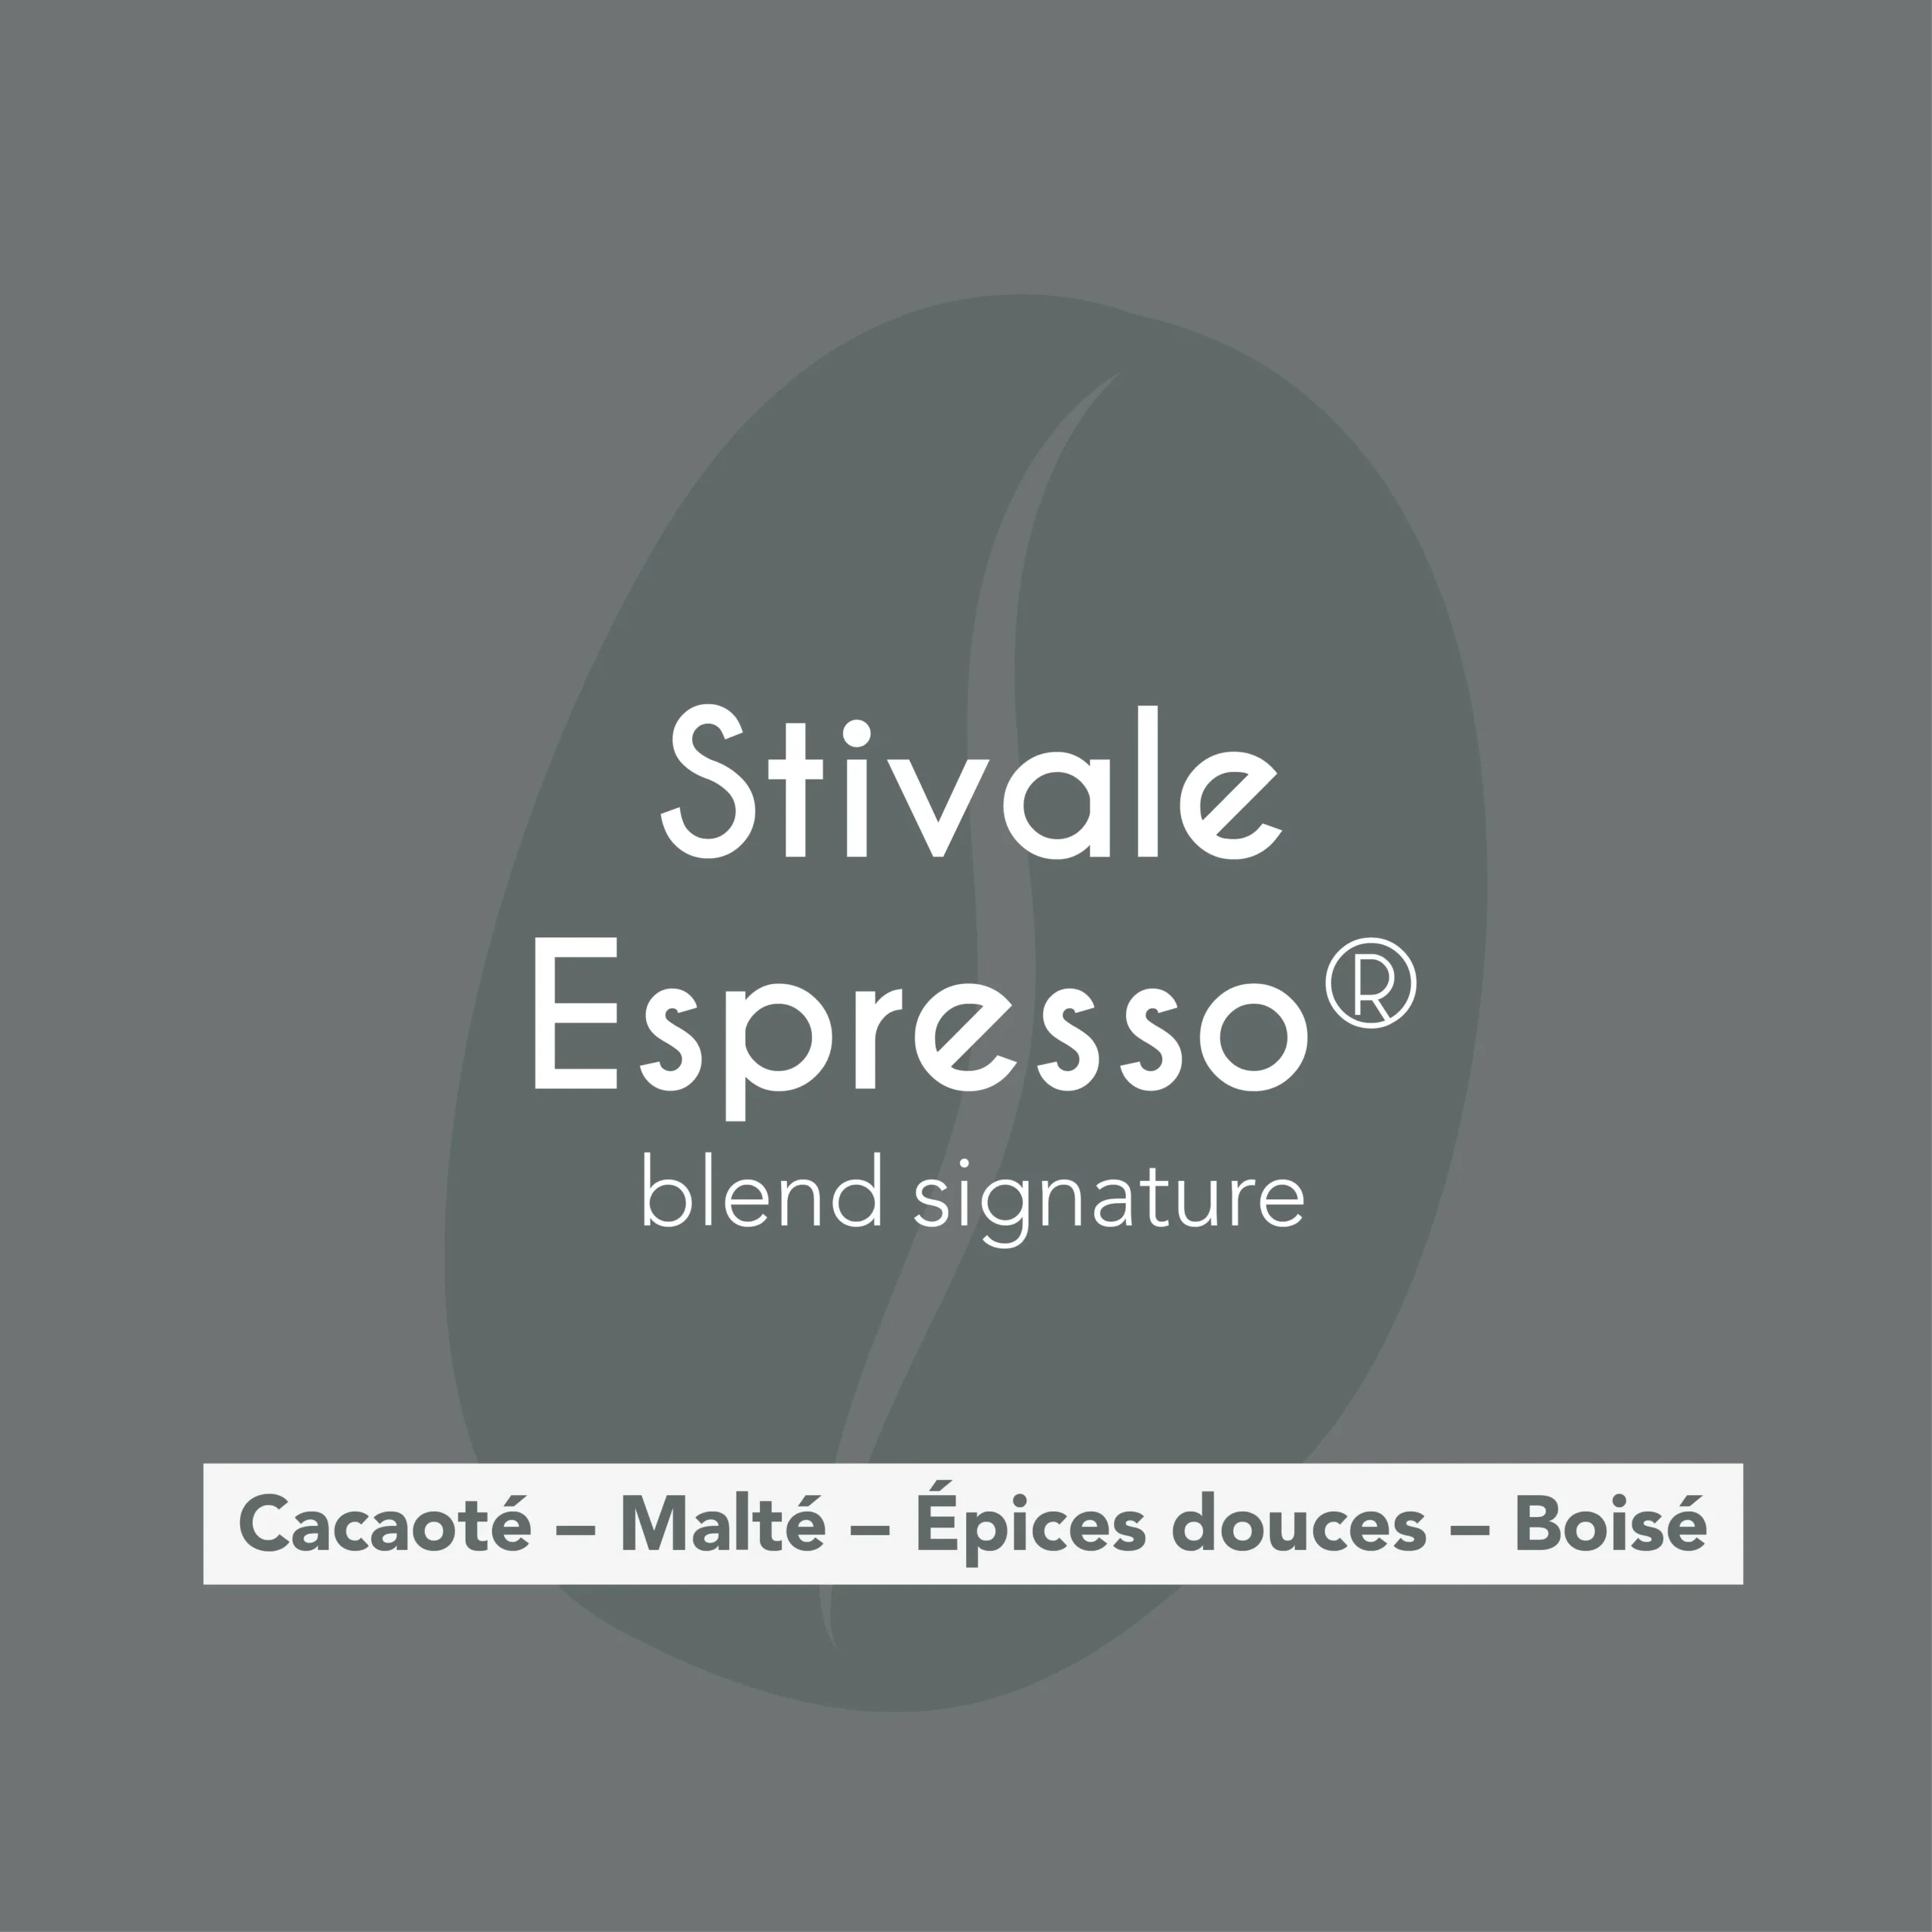 Description des flaveurs du café de torréfacteur Estivale Espresso